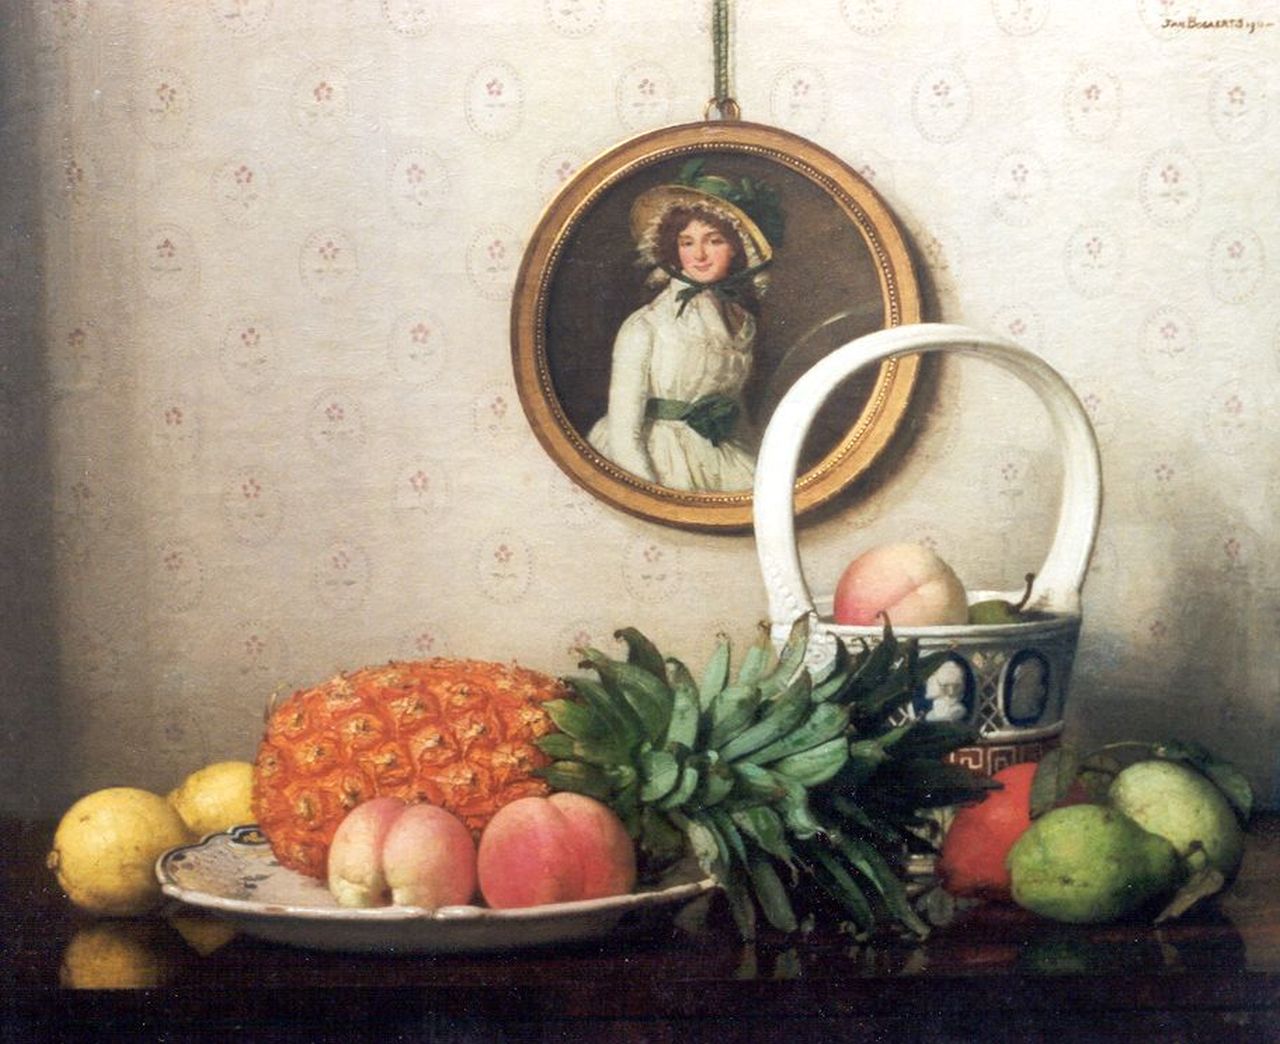 Bogaerts J.J.M.  | Johannes Jacobus Maria 'Jan' Bogaerts, Stilleven met vruchten en een rond portretje, olieverf op doek 50,2 x 61,0 cm, gesigneerd rechtsboven en gedateerd 1911